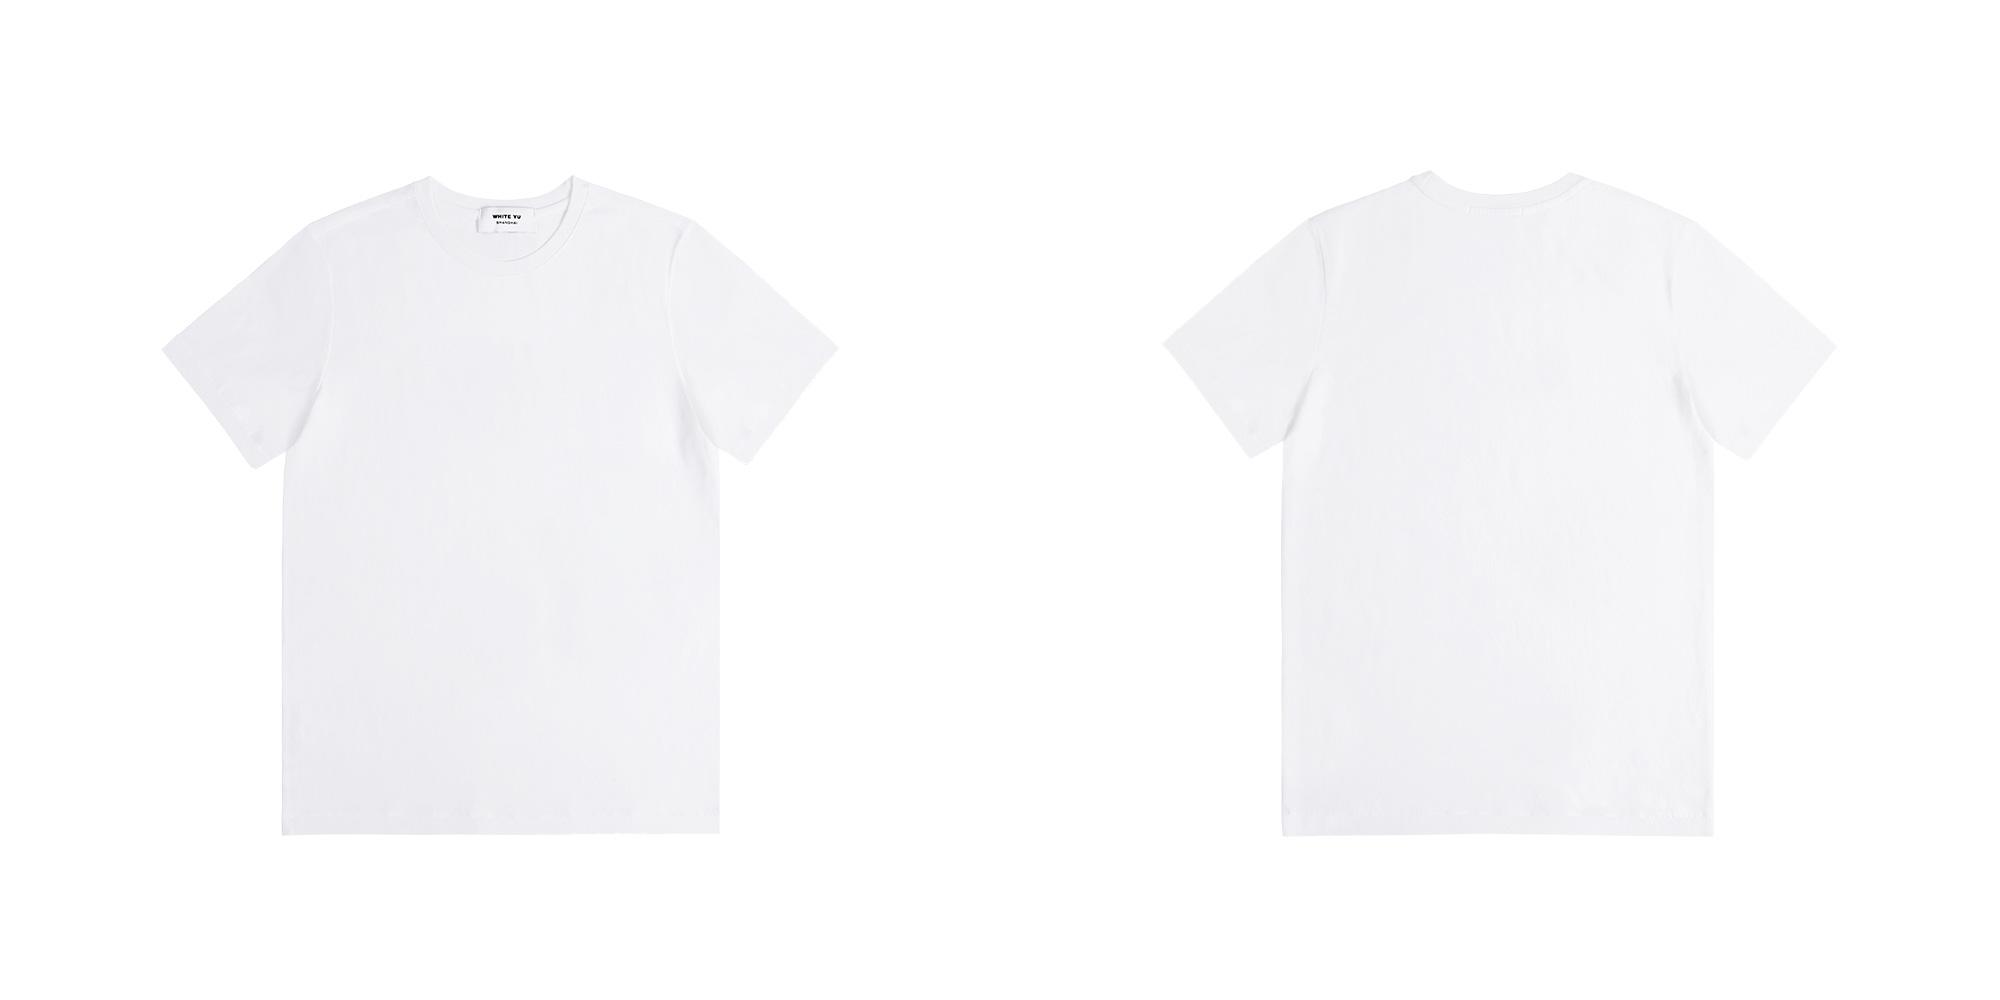 求空白T恤正反面各色模板图 可以是矢量图- _汇潮装饰网